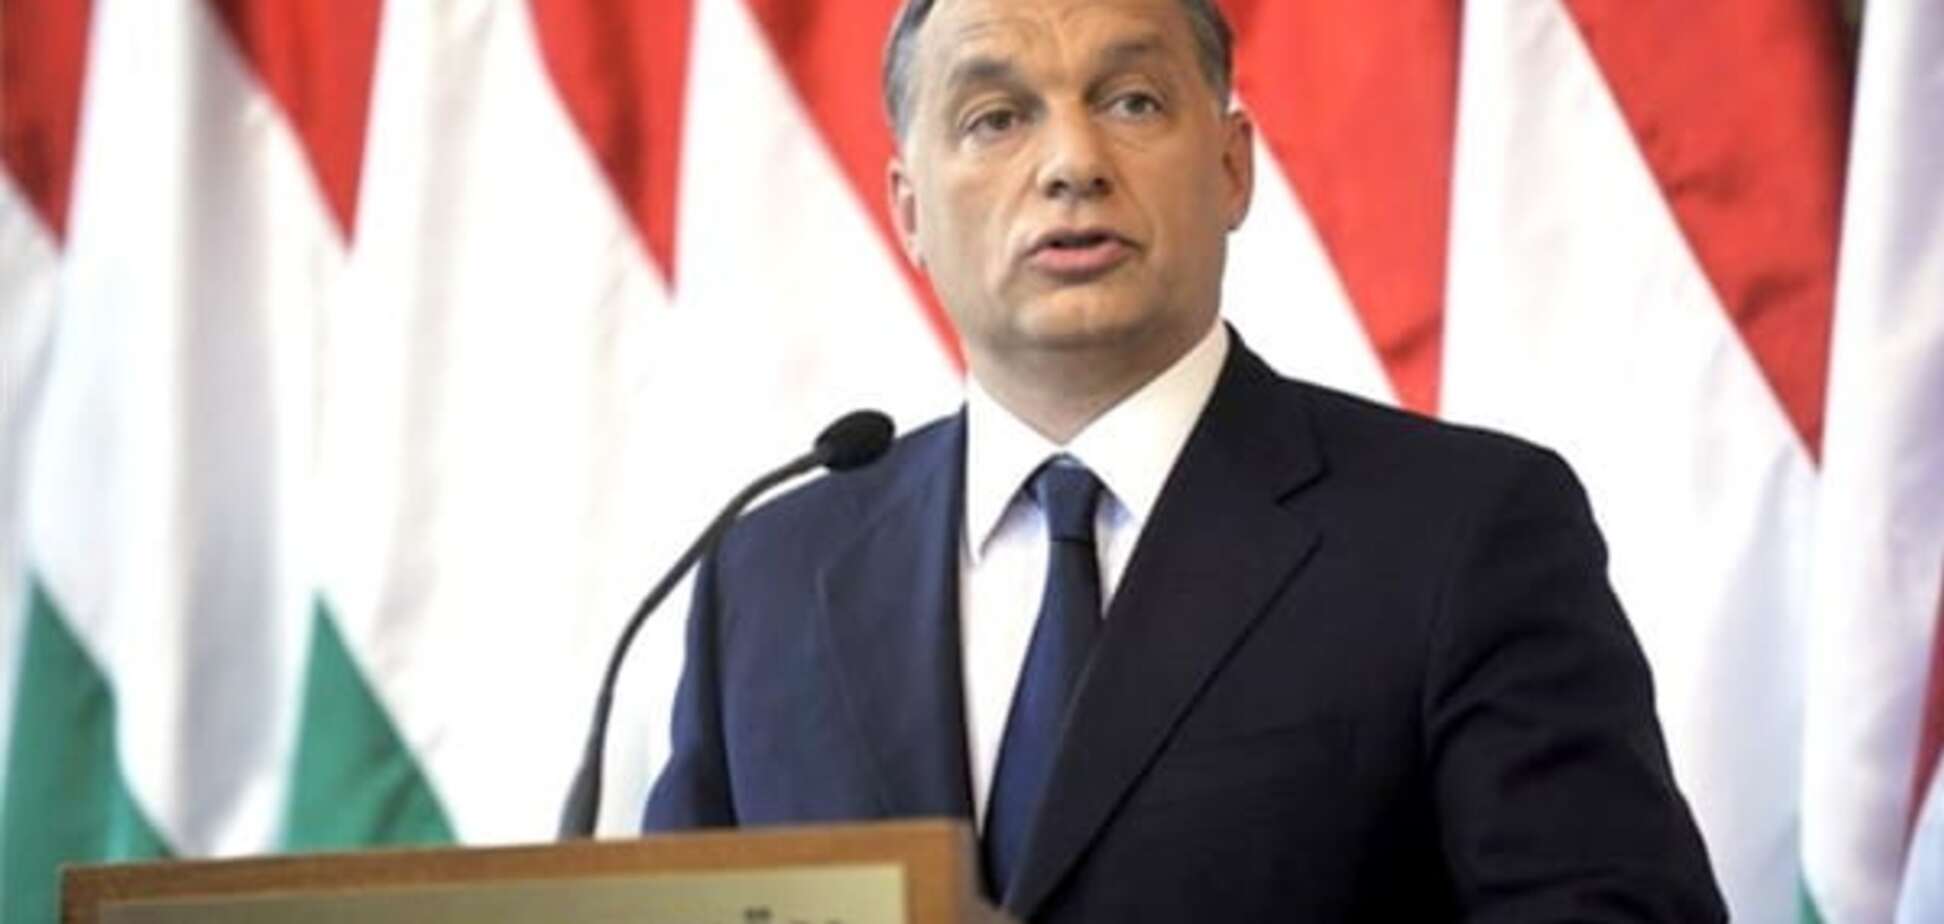 США и арабские страны должны принять часть беженцев - премьер Венгрии